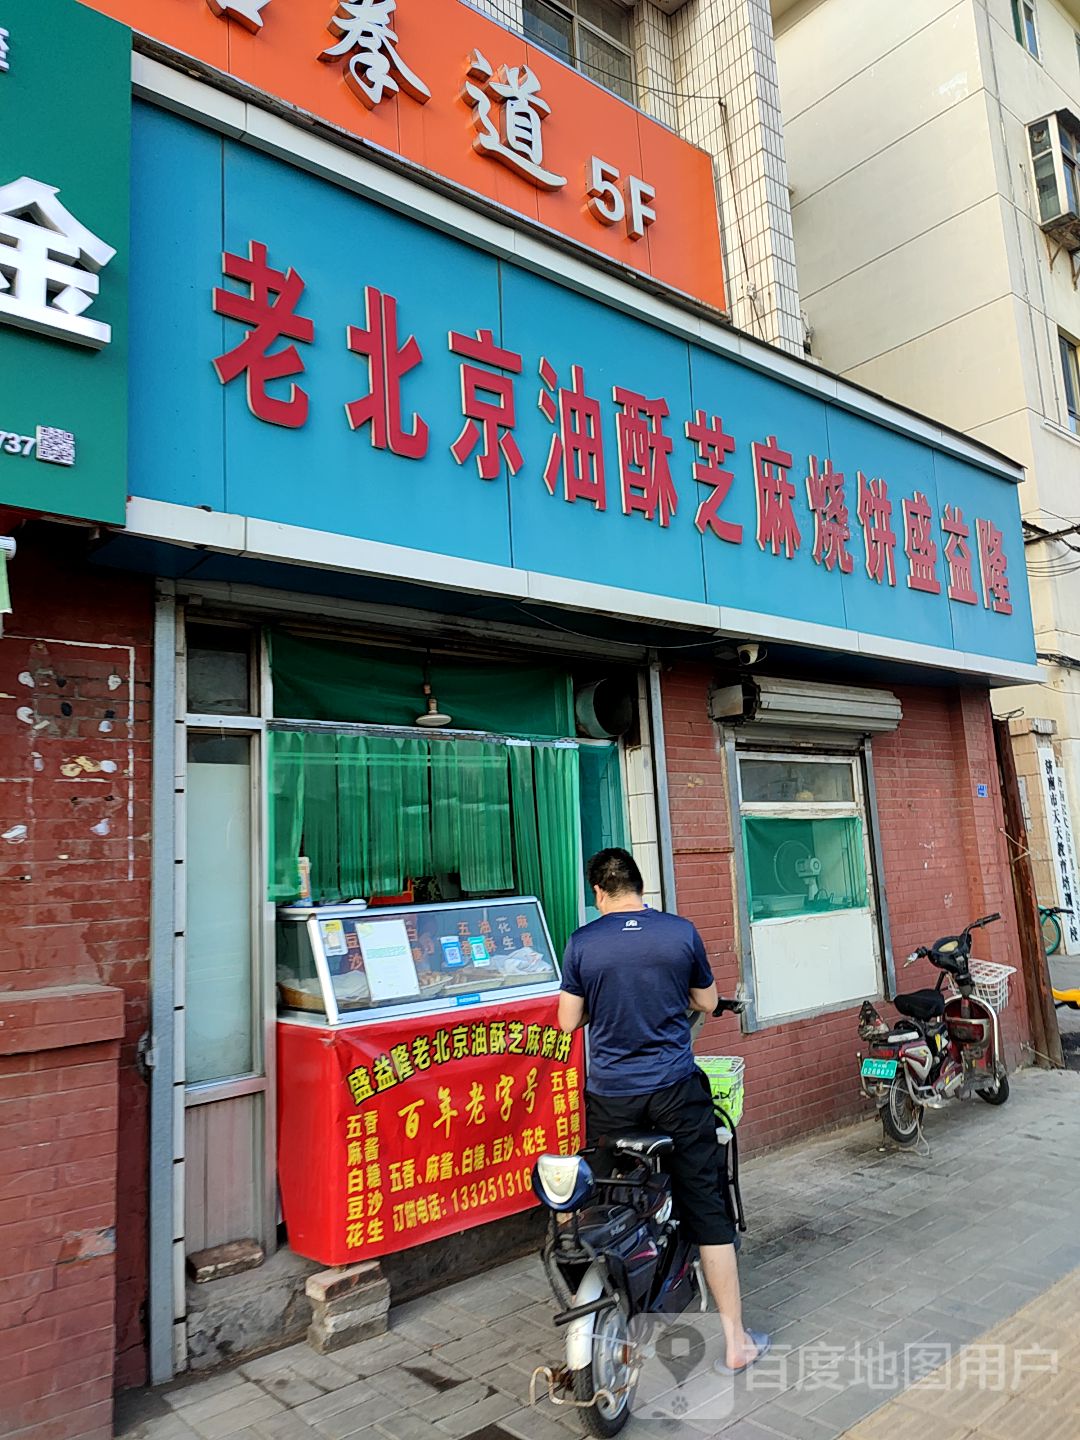 老北京油酥芝麻烧饼盛益隆(堤口路店)